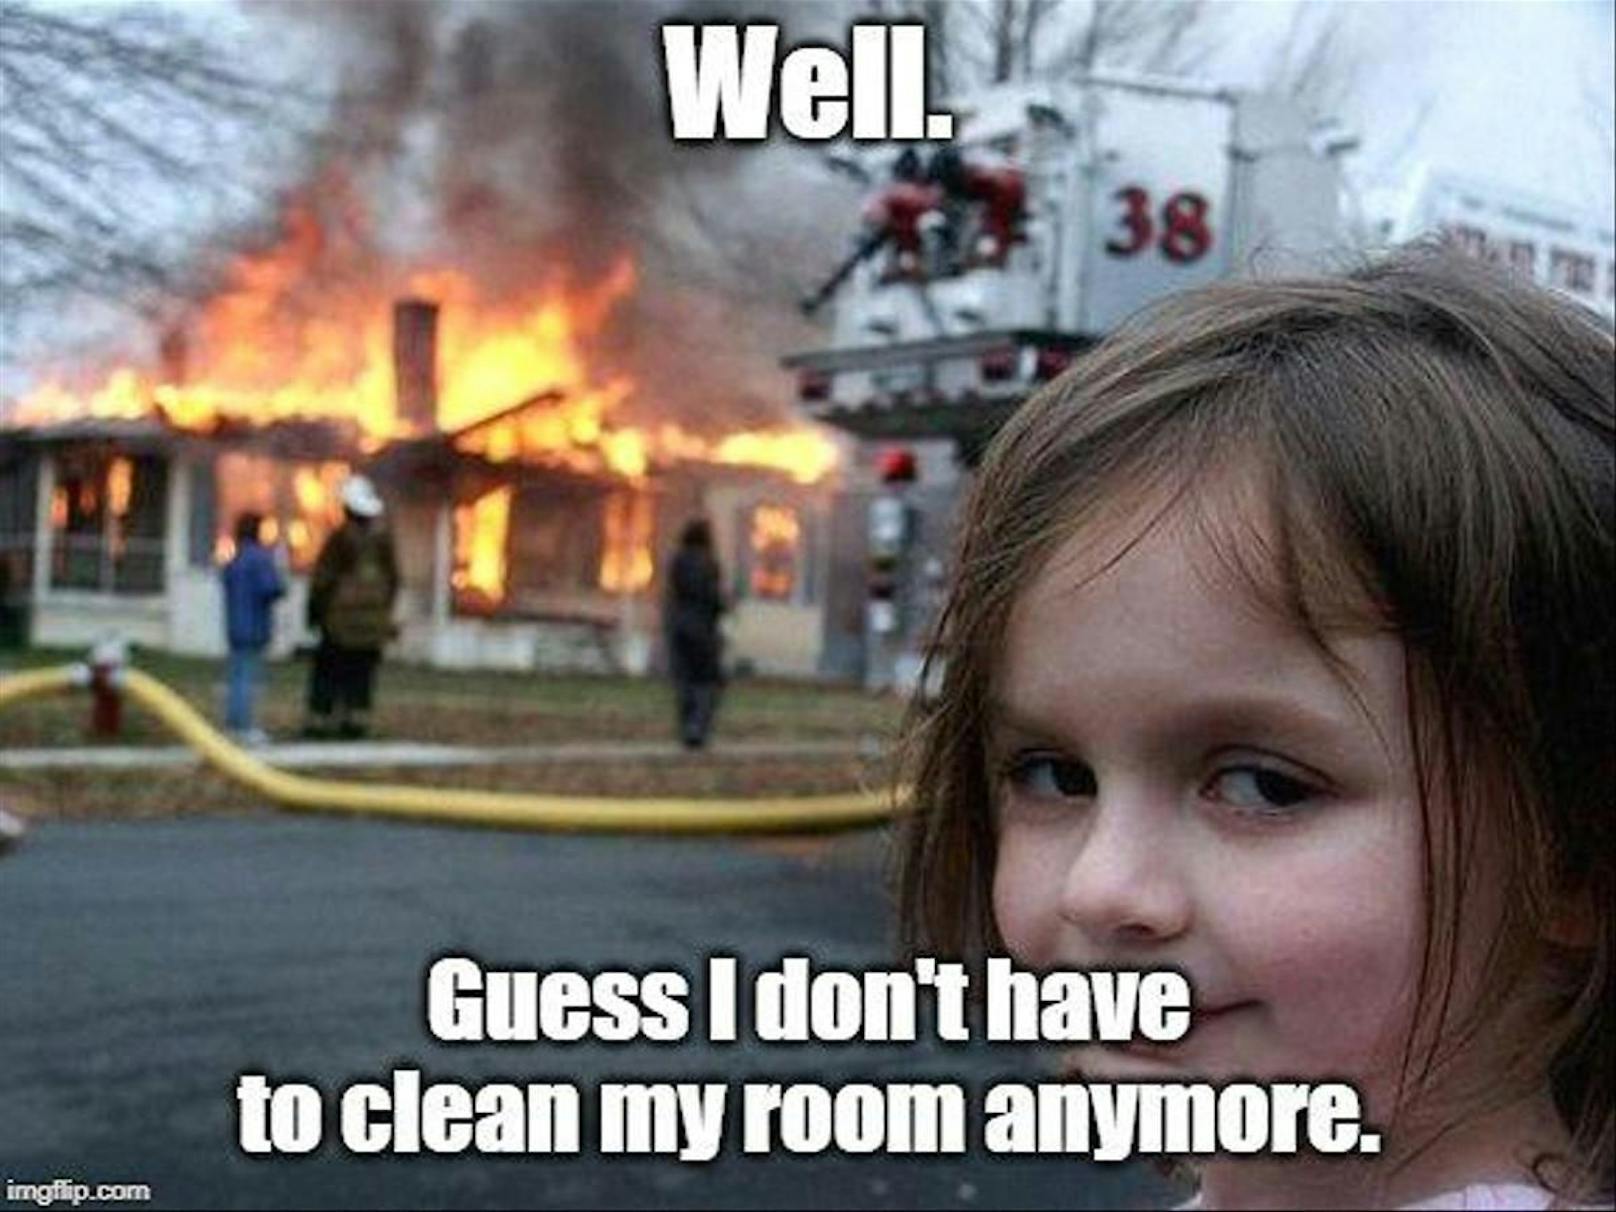 Oder diesem: "Na…jetzt muss ich mein Zimmer wohl nicht mehr aufräumen."